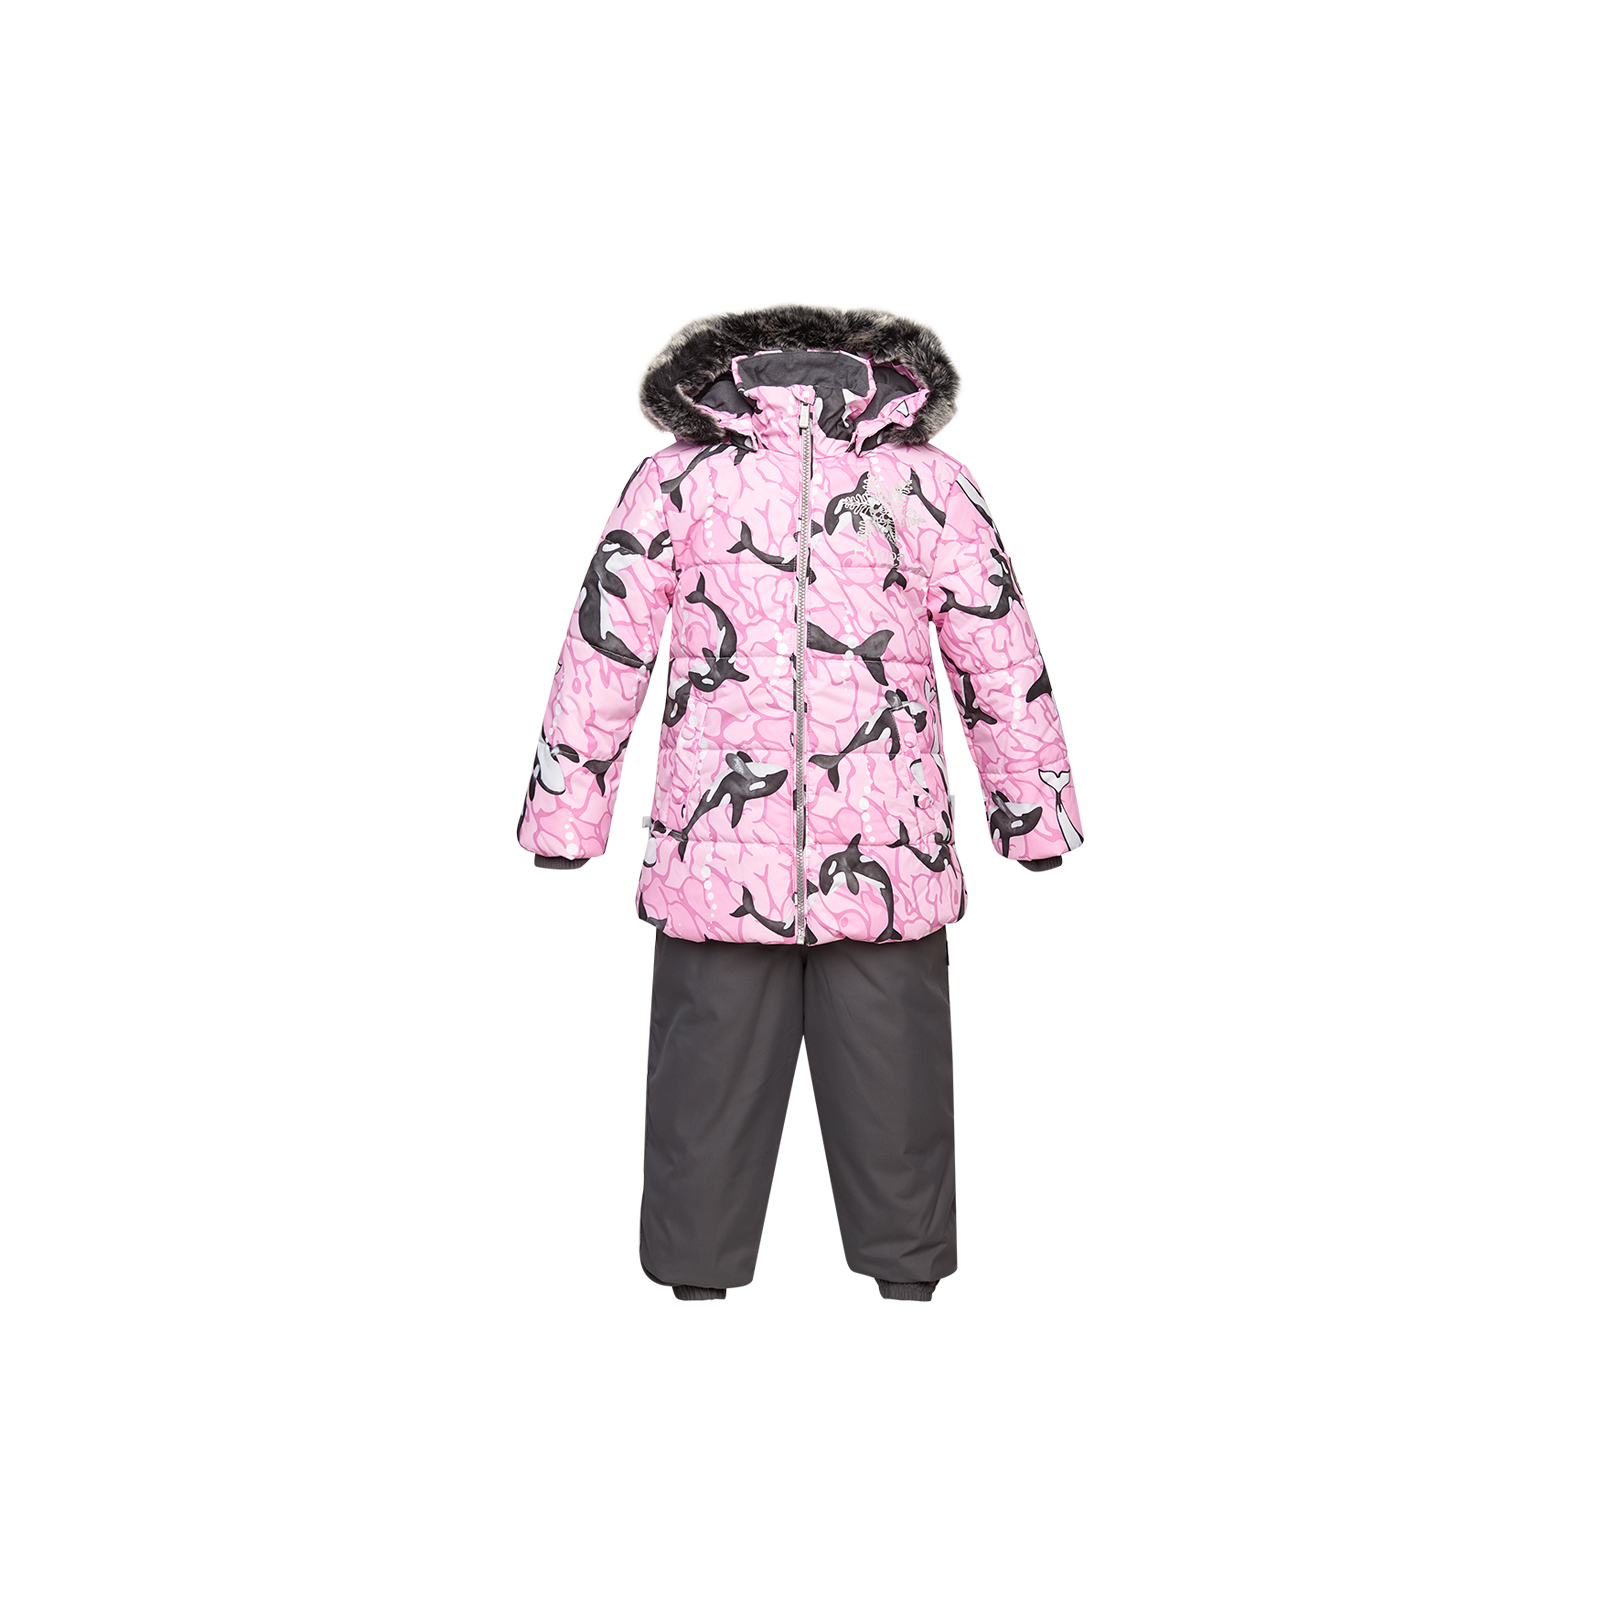 Комплект верхней одежды Huppa BELINDA 1 45090130 cветло-розовый с принтом/серый 110 (4741468977386)